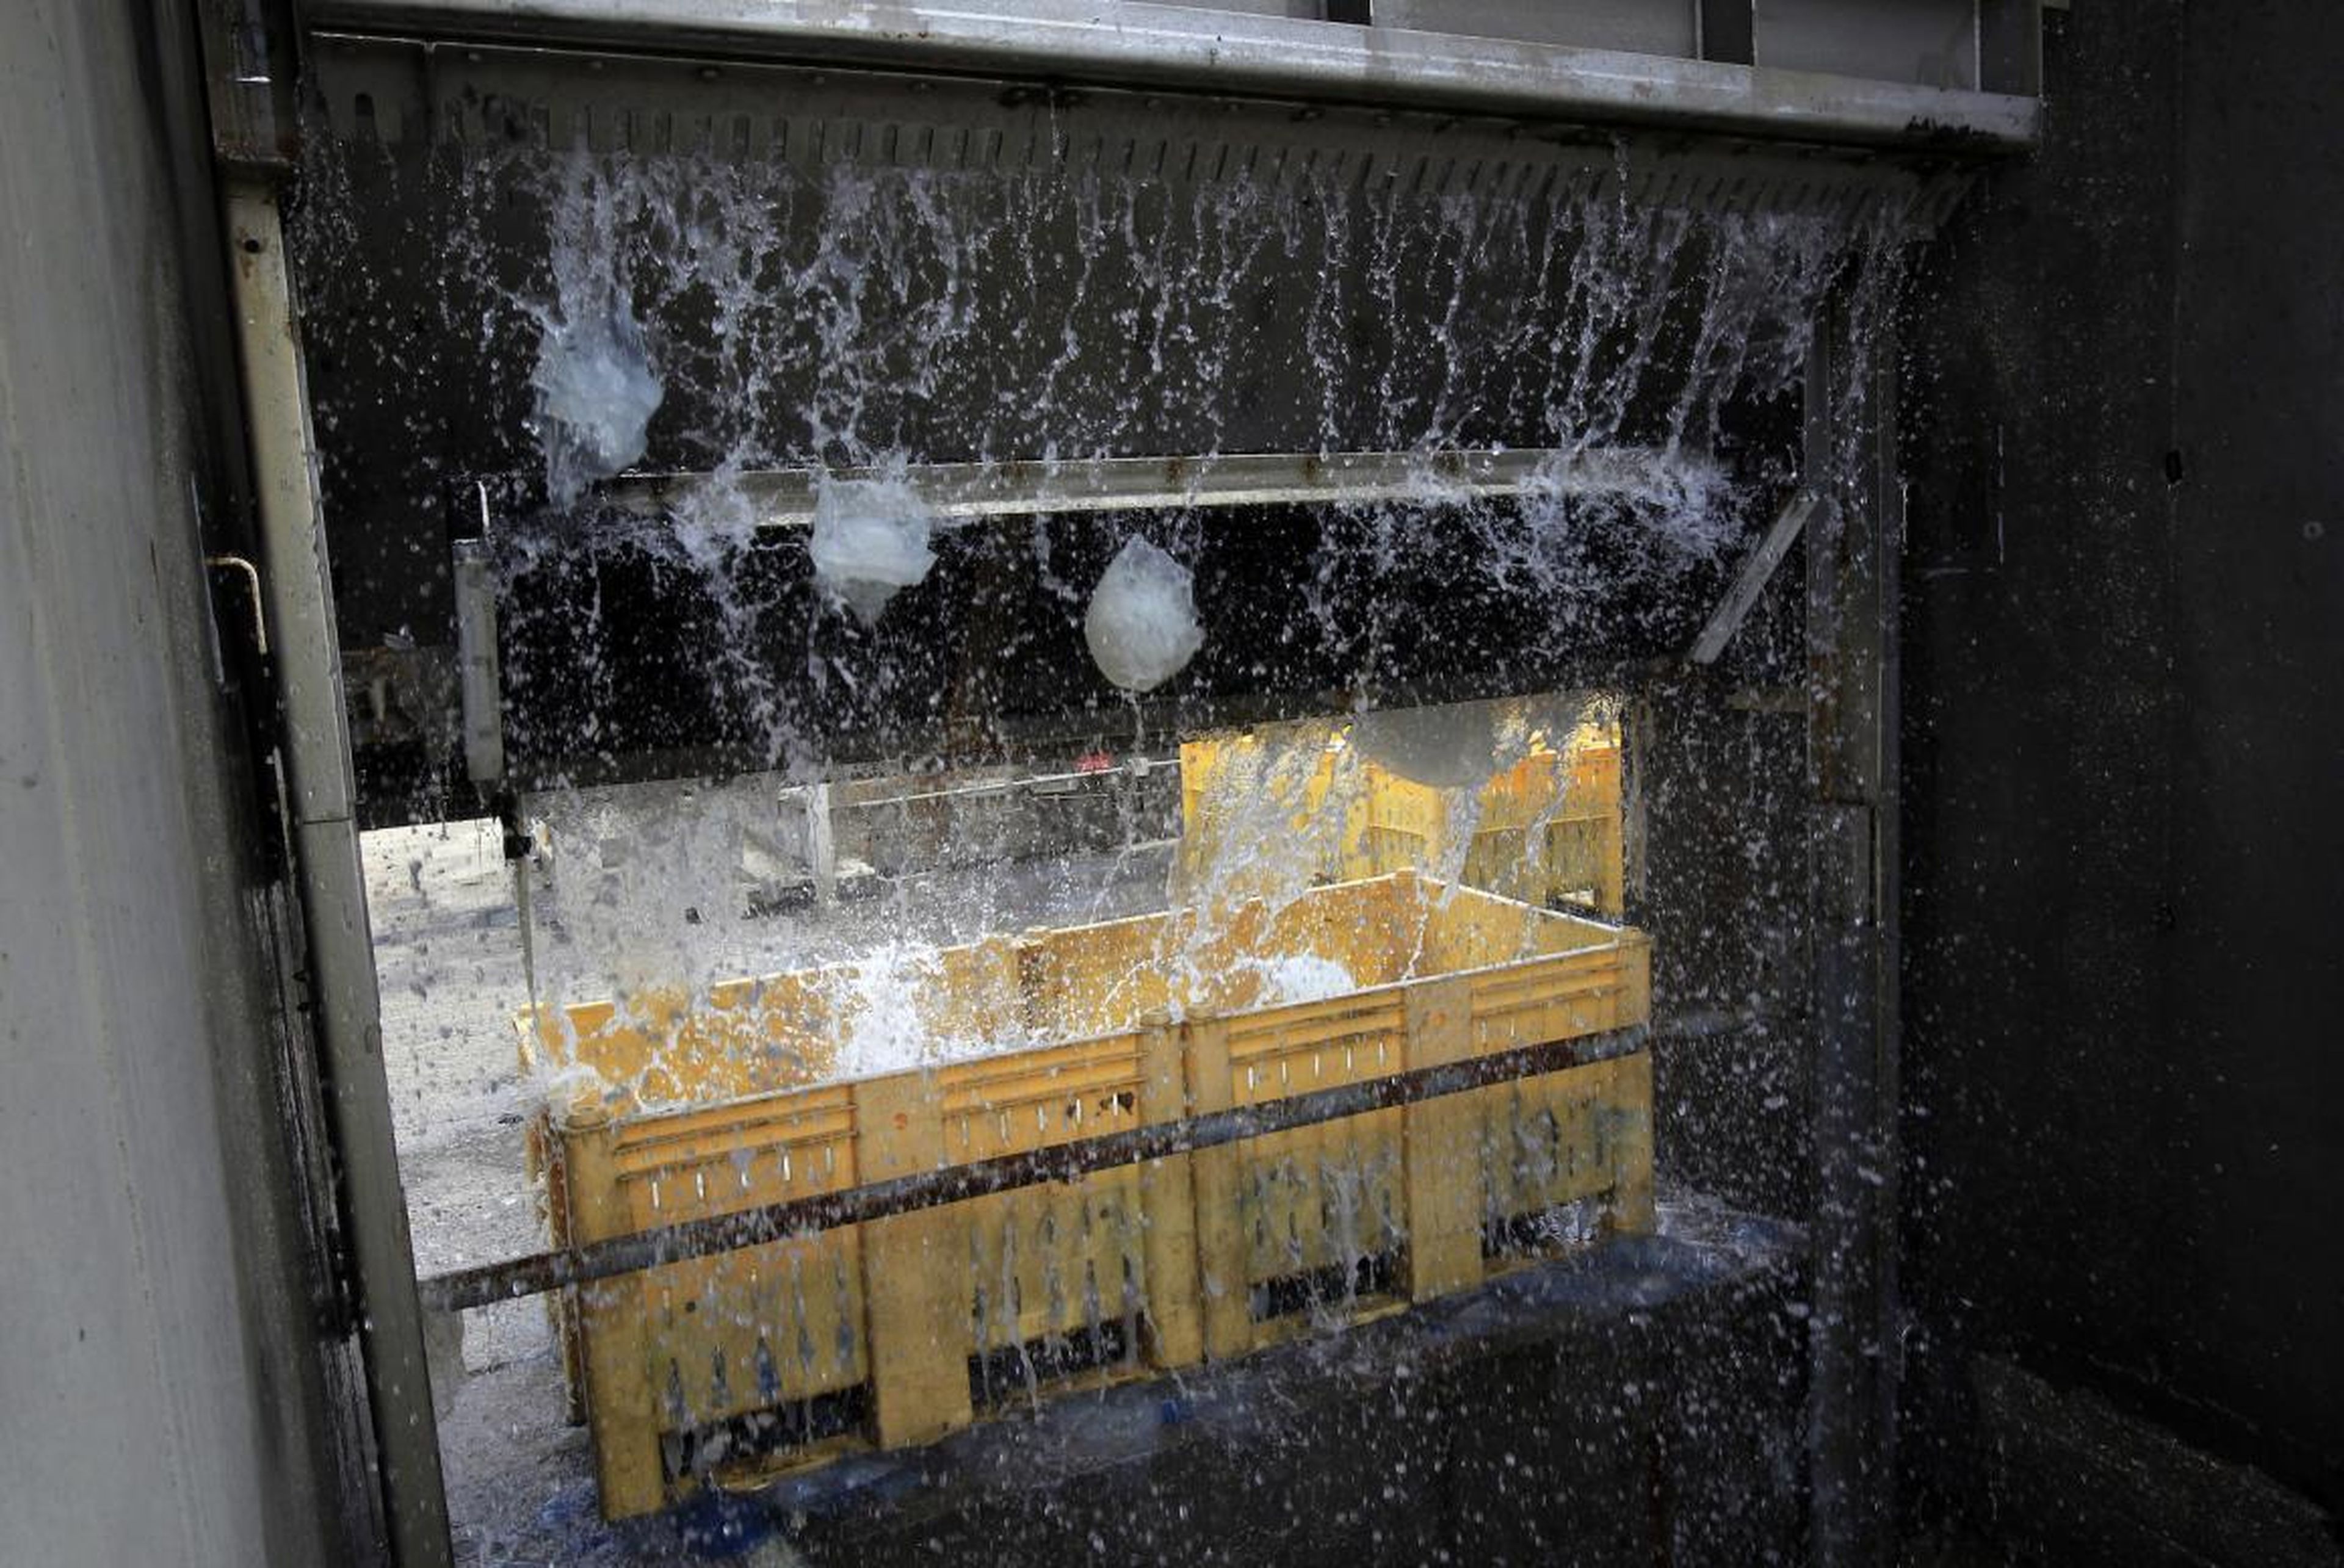 Medusas cayendo de un filtro a un contenedor en la central eléctrica de Orot Rabin en Israel, el 5 de julio de 2011. La central utiliza agua de mar para enfriar y tiene que filtrar y eliminar diariamente las toneladas de medusas que absorbe su sistema.